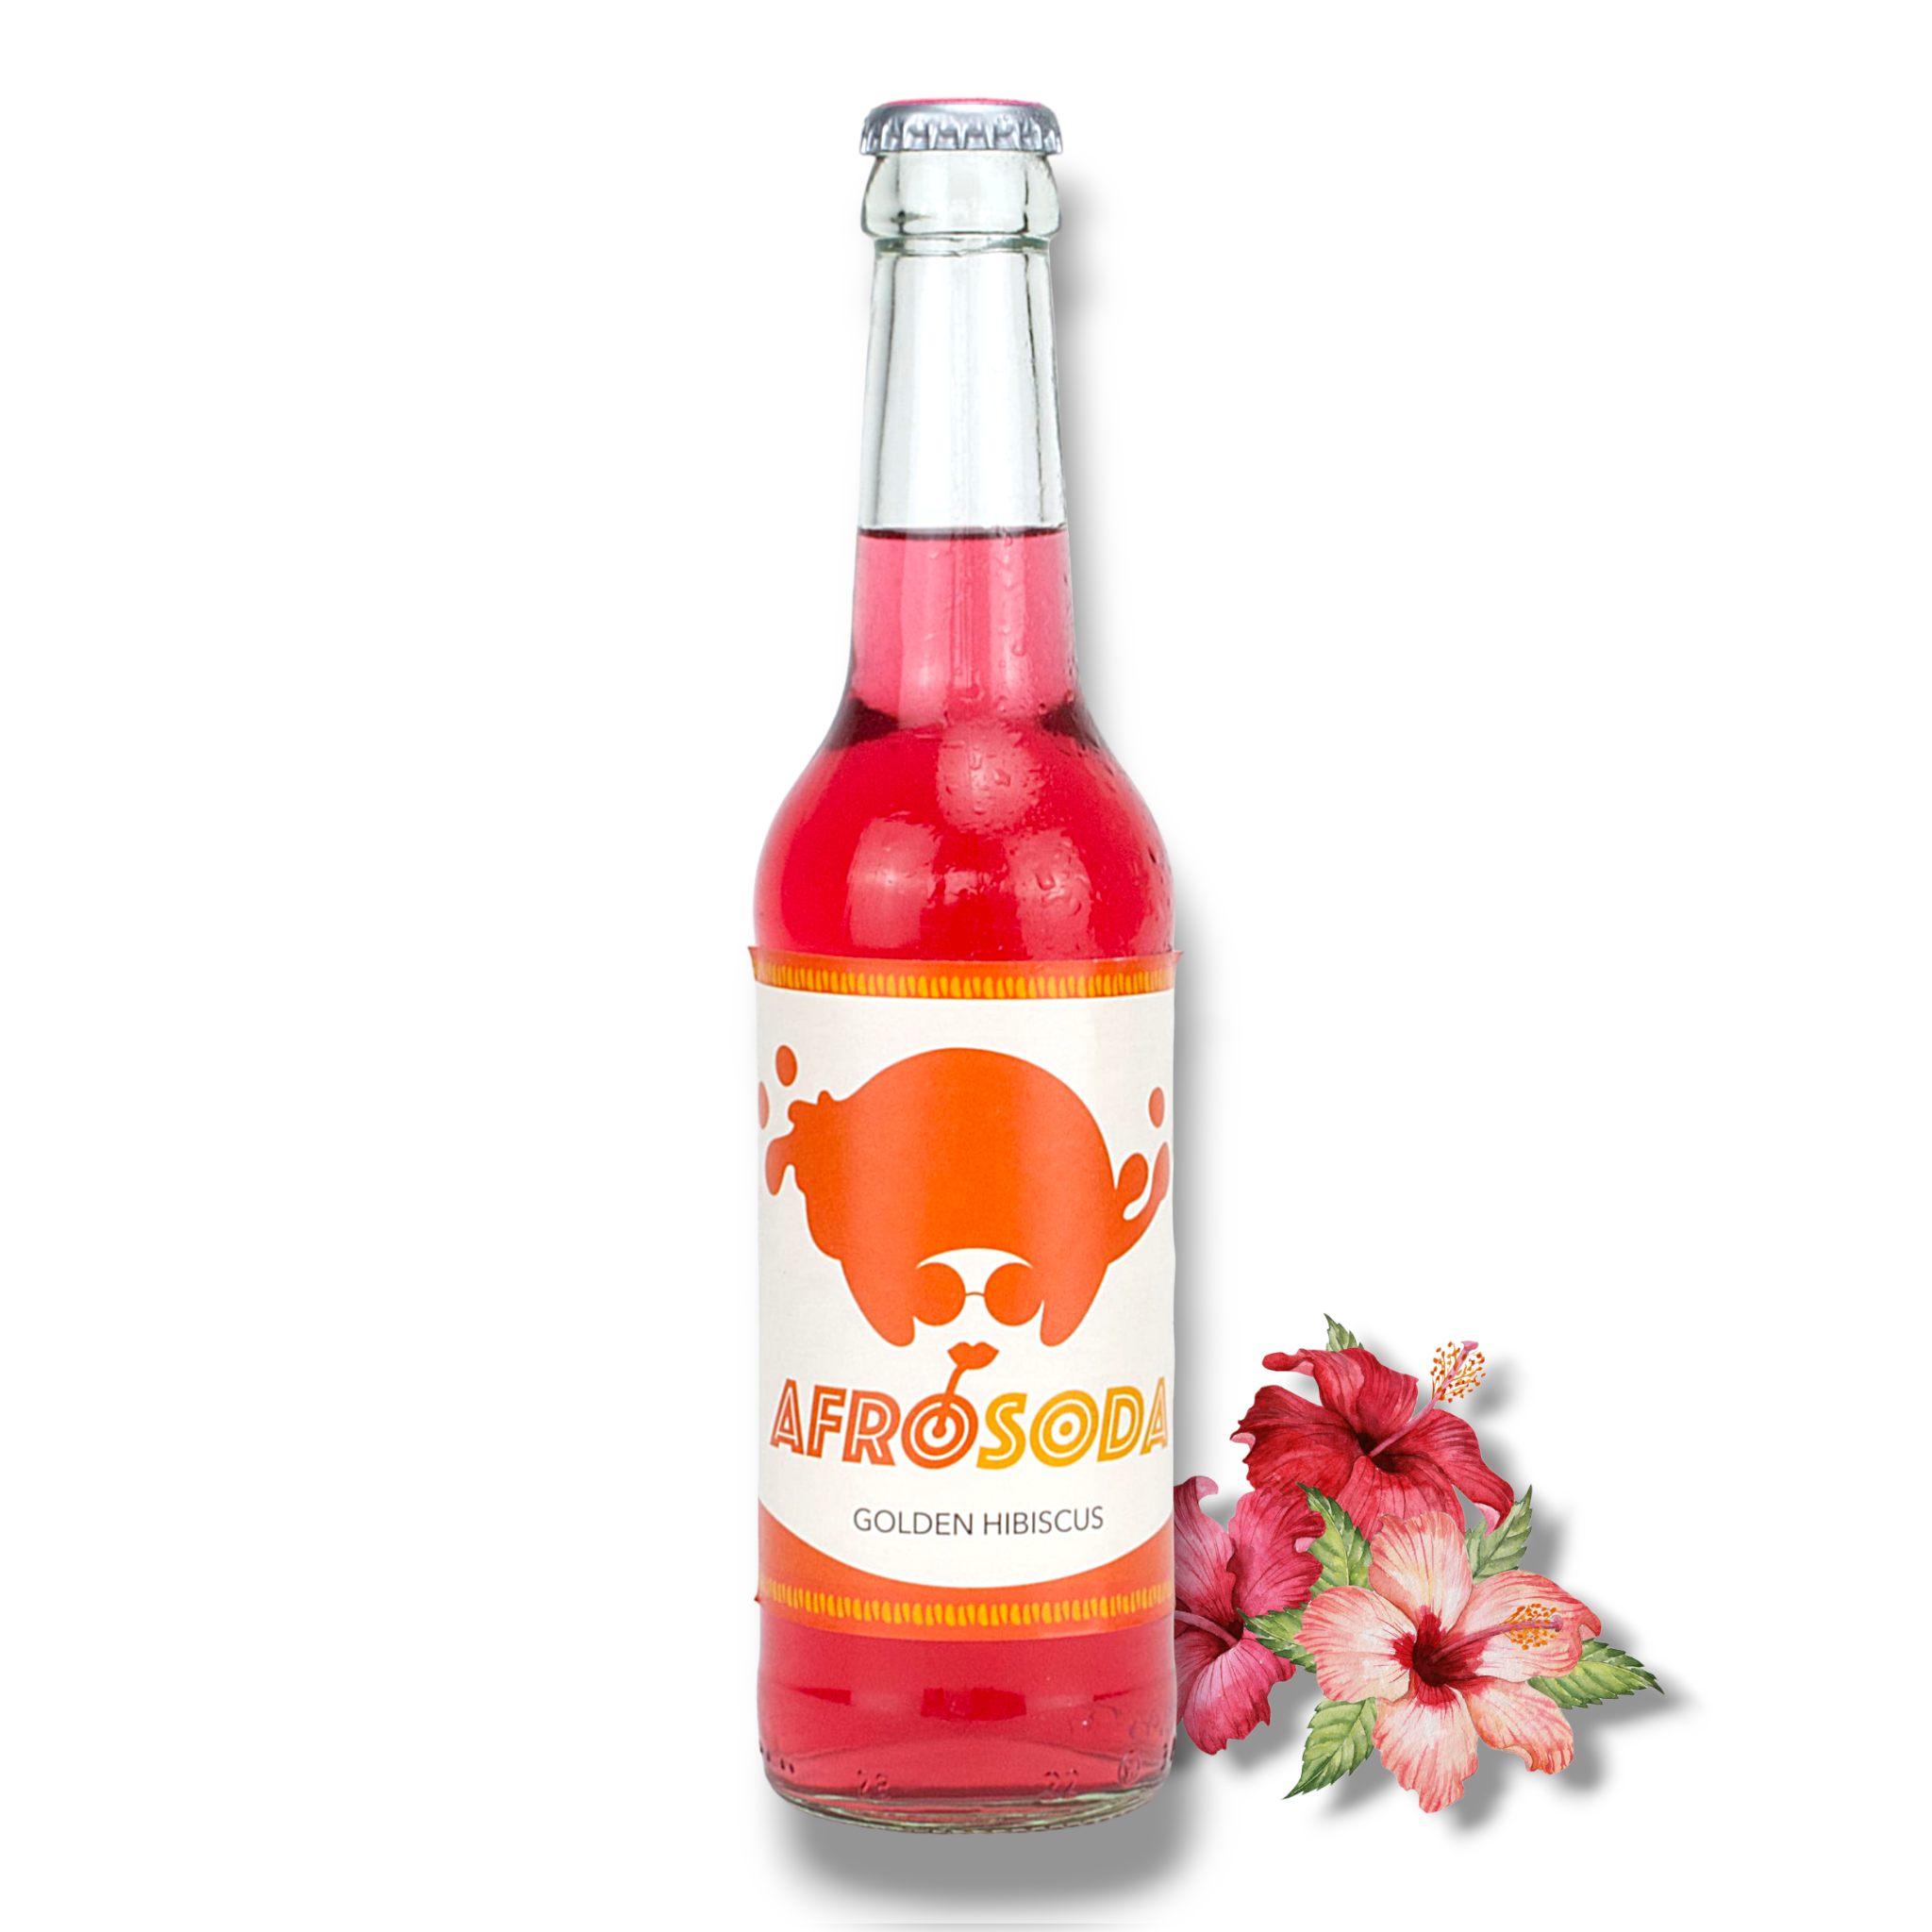 Neu! Afrosoda Golden Hibiscus 0,33l- Taste The Beat - Erfrischungsgetränk mit Hibiscus Ingwergeschmack